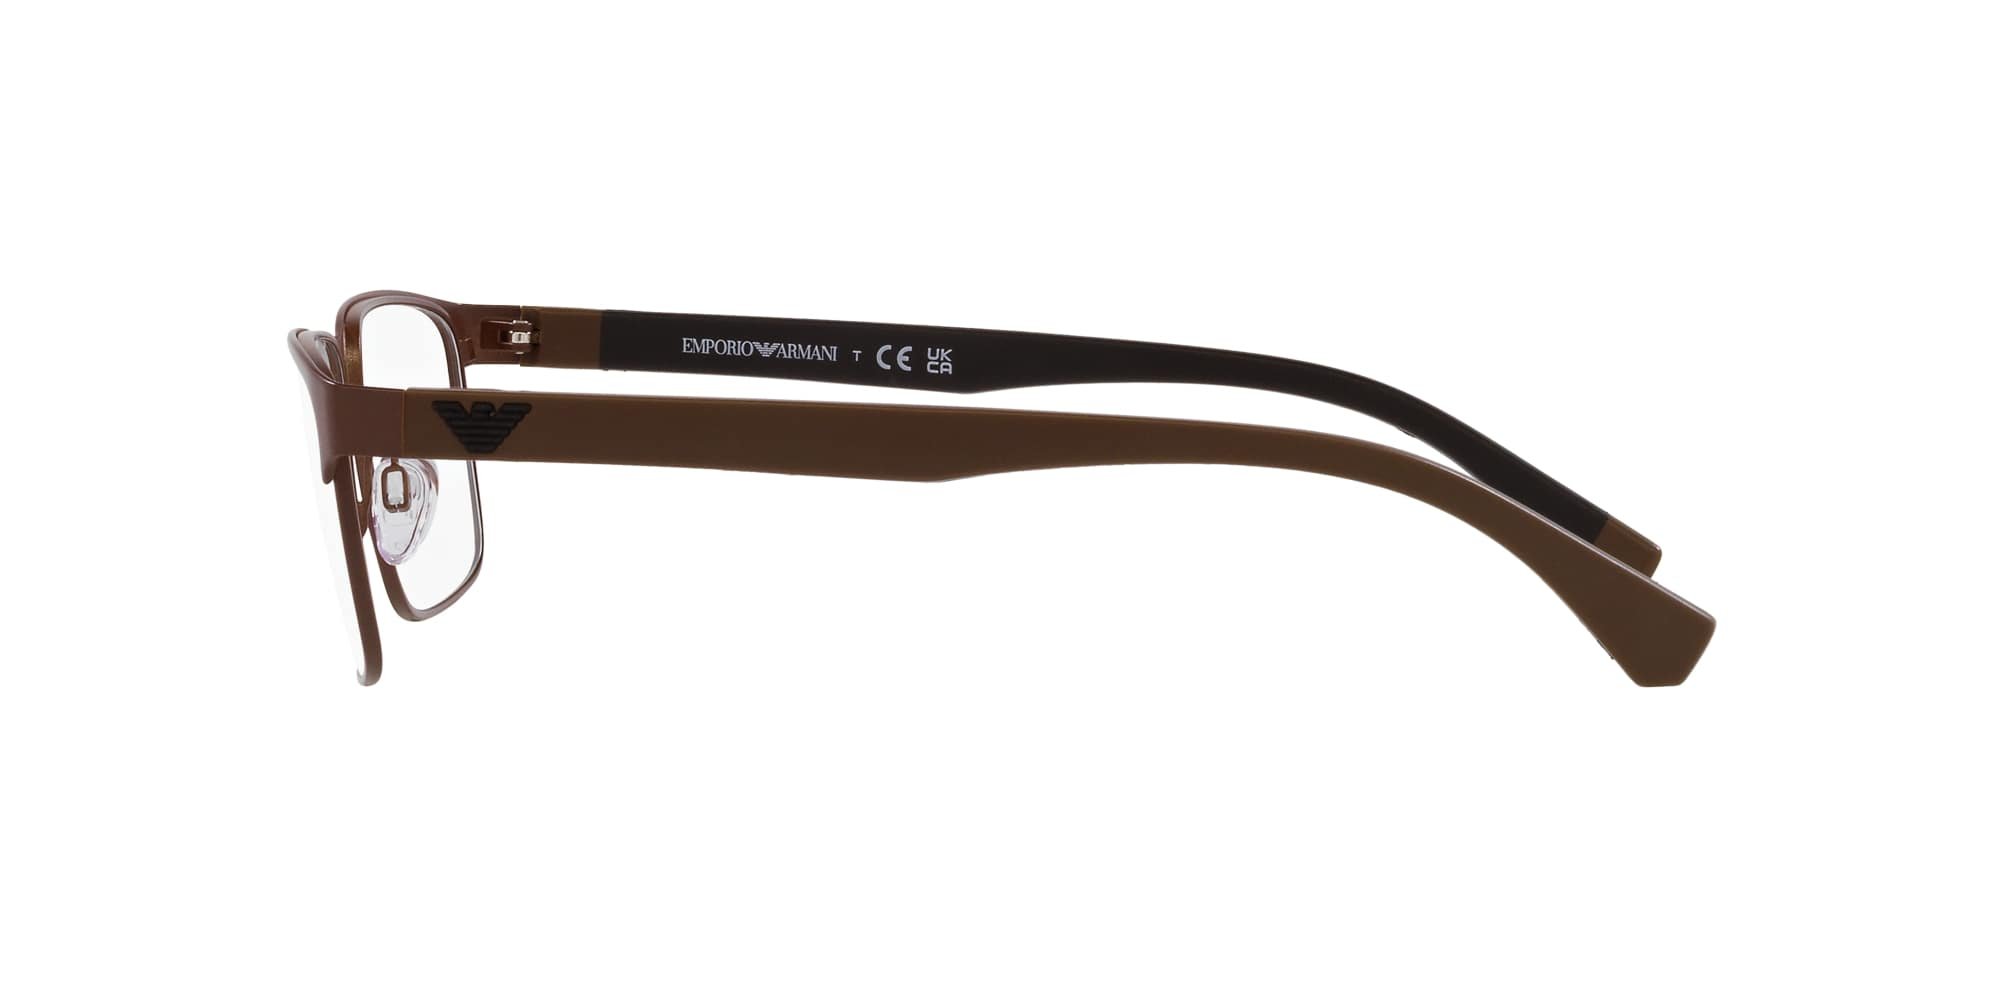 Das Bild zeigt die Korrektionsbrille EA1105 3020 von der Marke Emporio Armani in Braun.